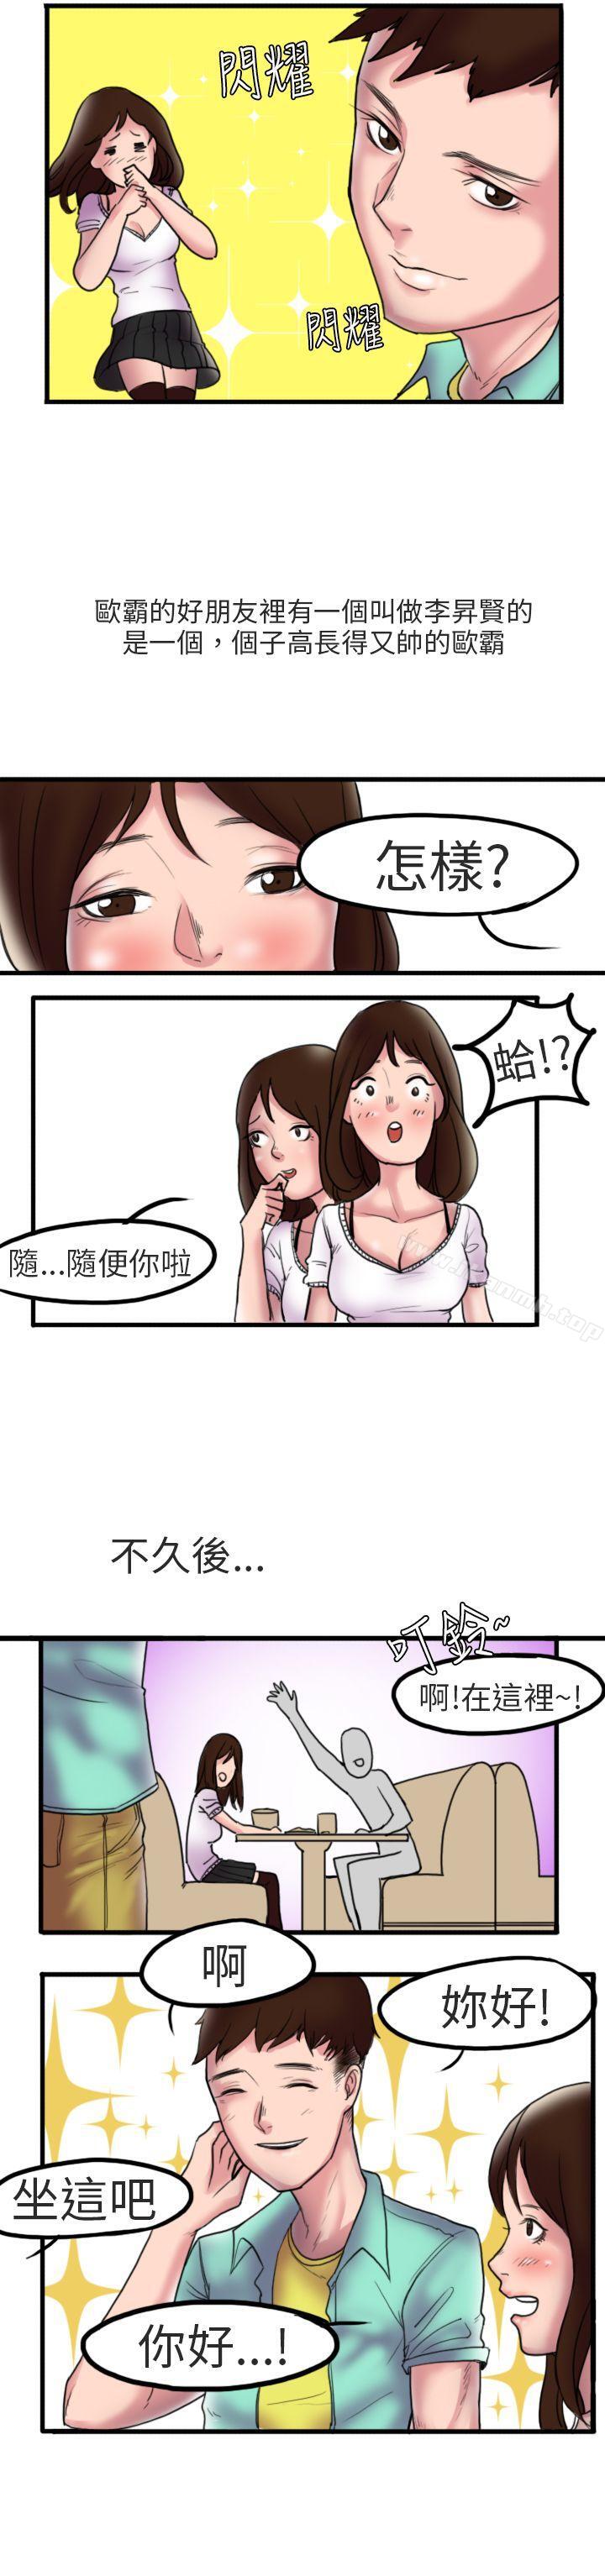 漫画韩国 秘密Story第二季   - 立即阅读 第二季 床與牆壁之間(上)第5漫画图片